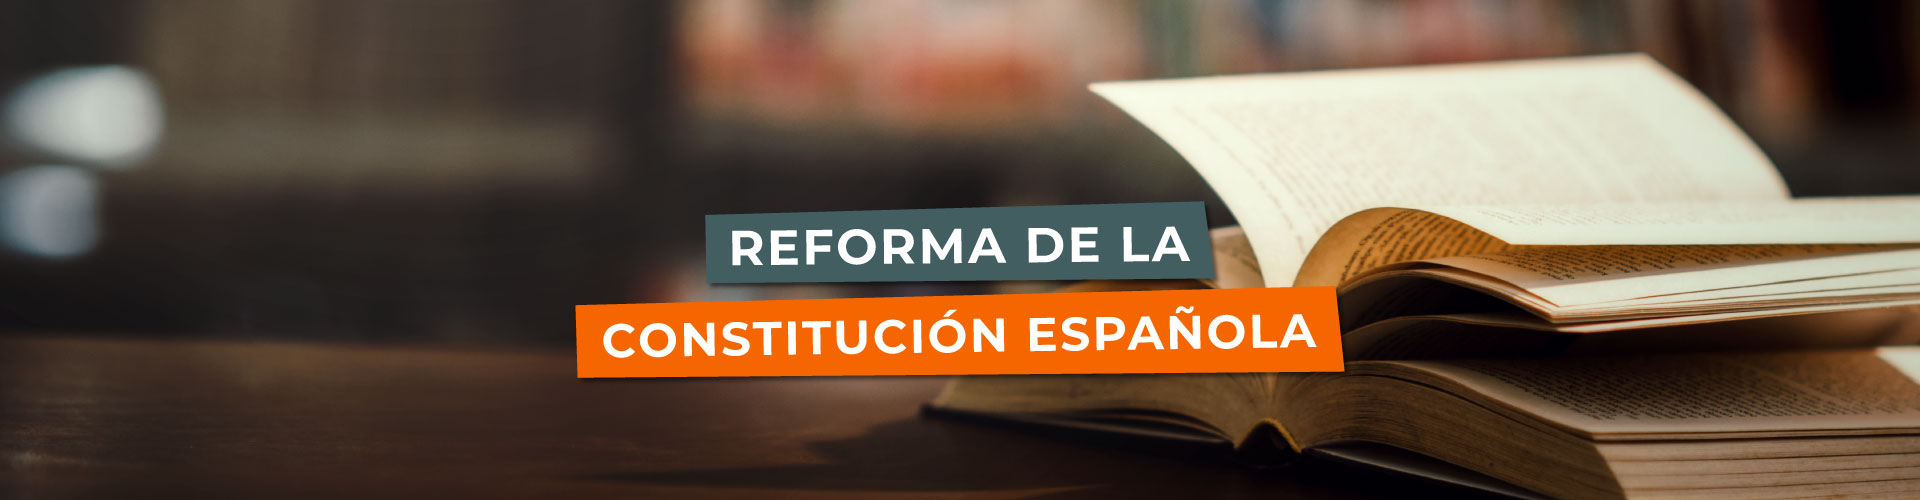 La Reforma de la Constitución Española